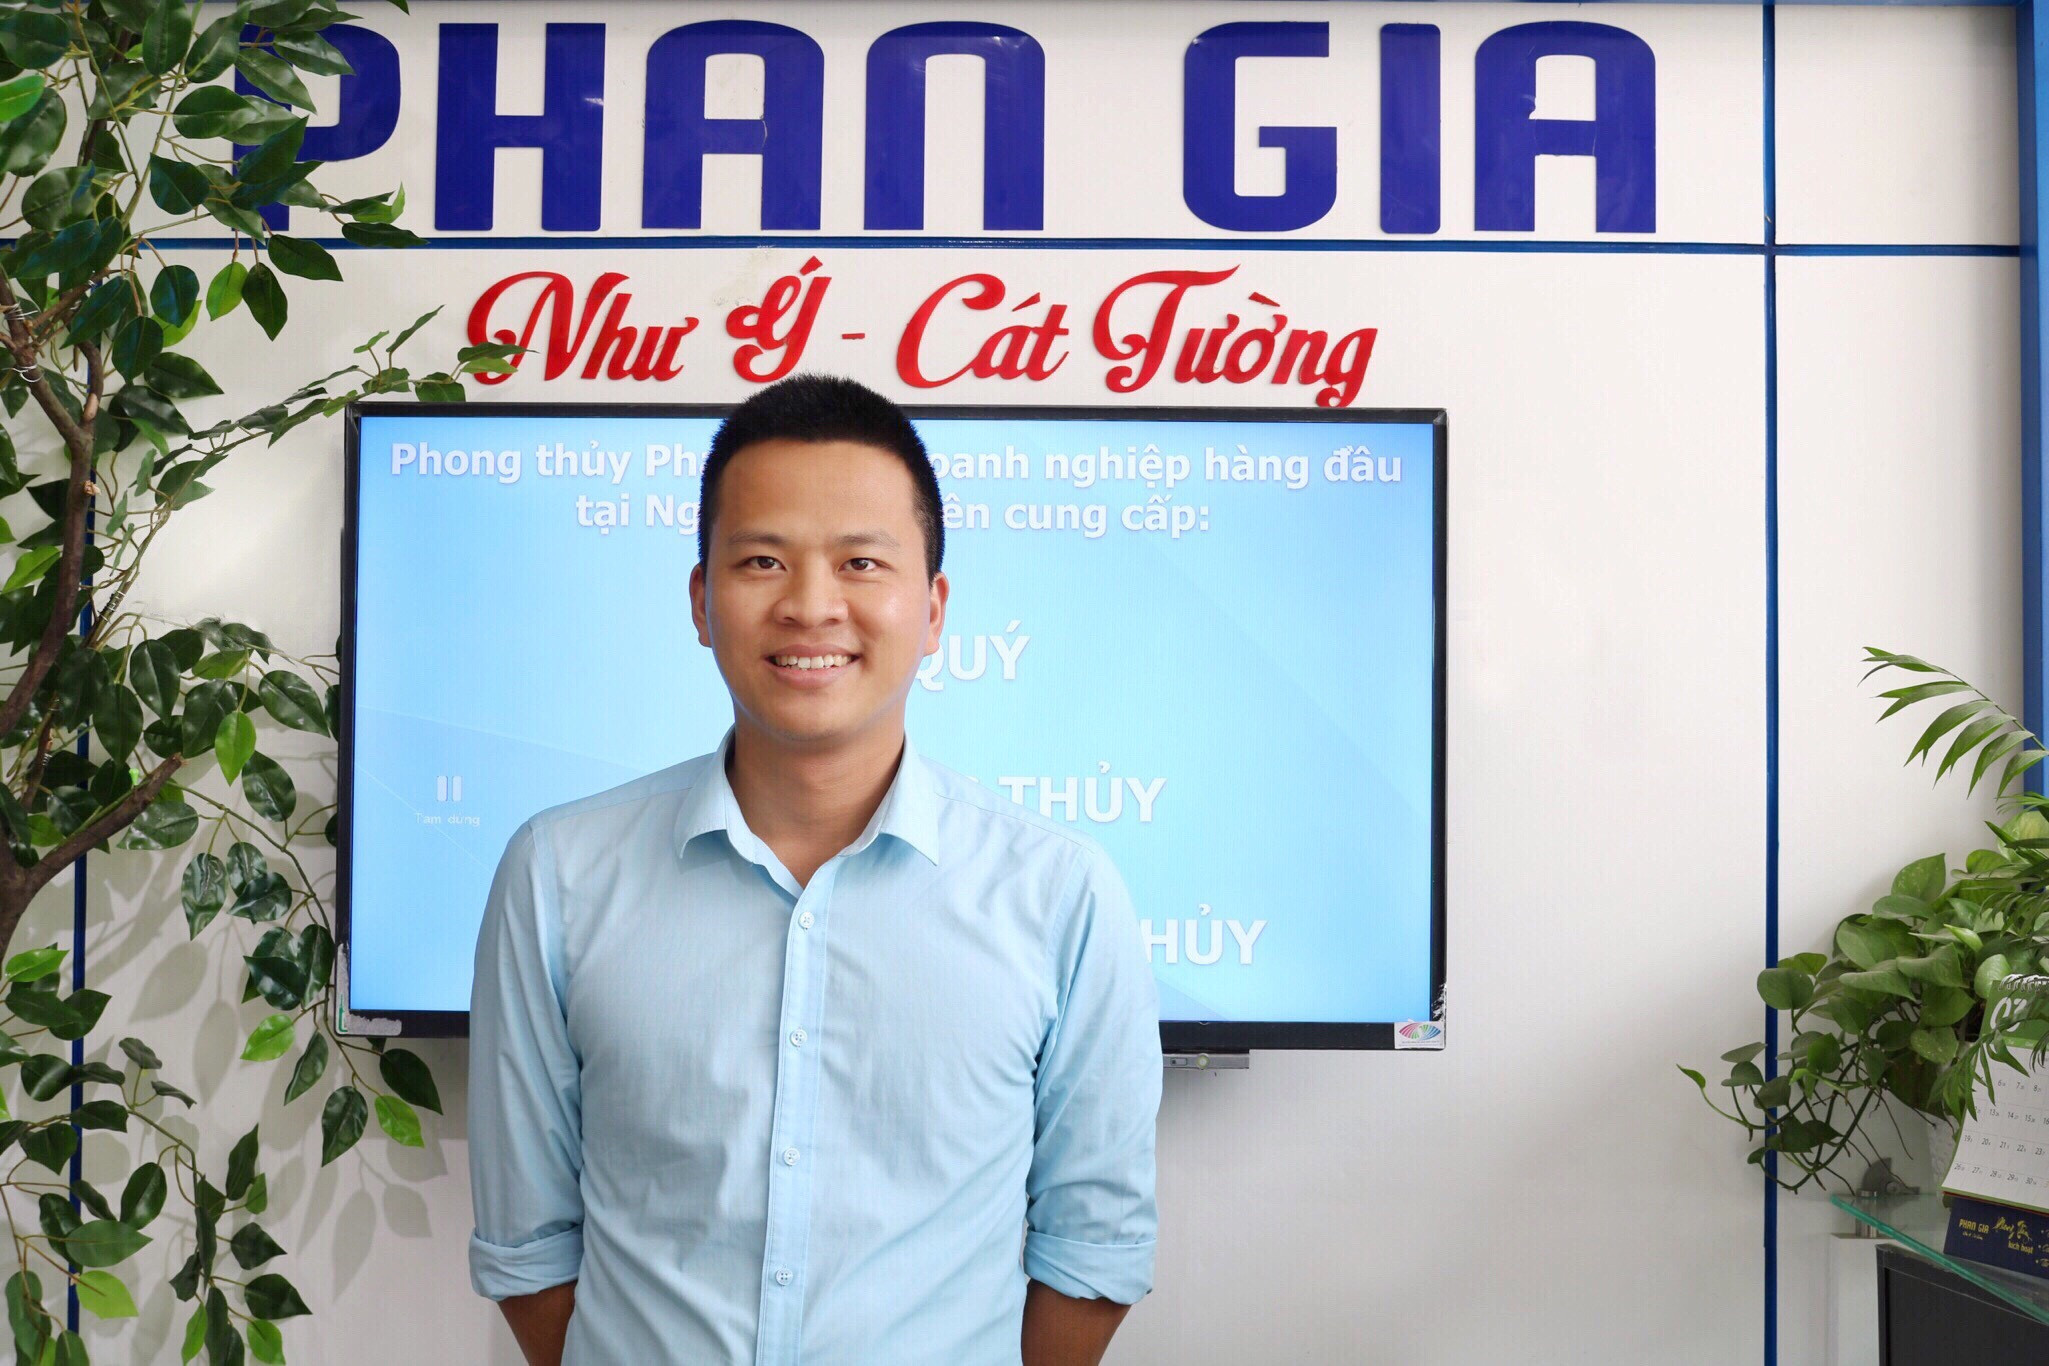 Ông chủ trẻ Phan Thanh Biên khởi nghiệp thành công tại Nghệ An trên lĩnh vực đá phong thủy